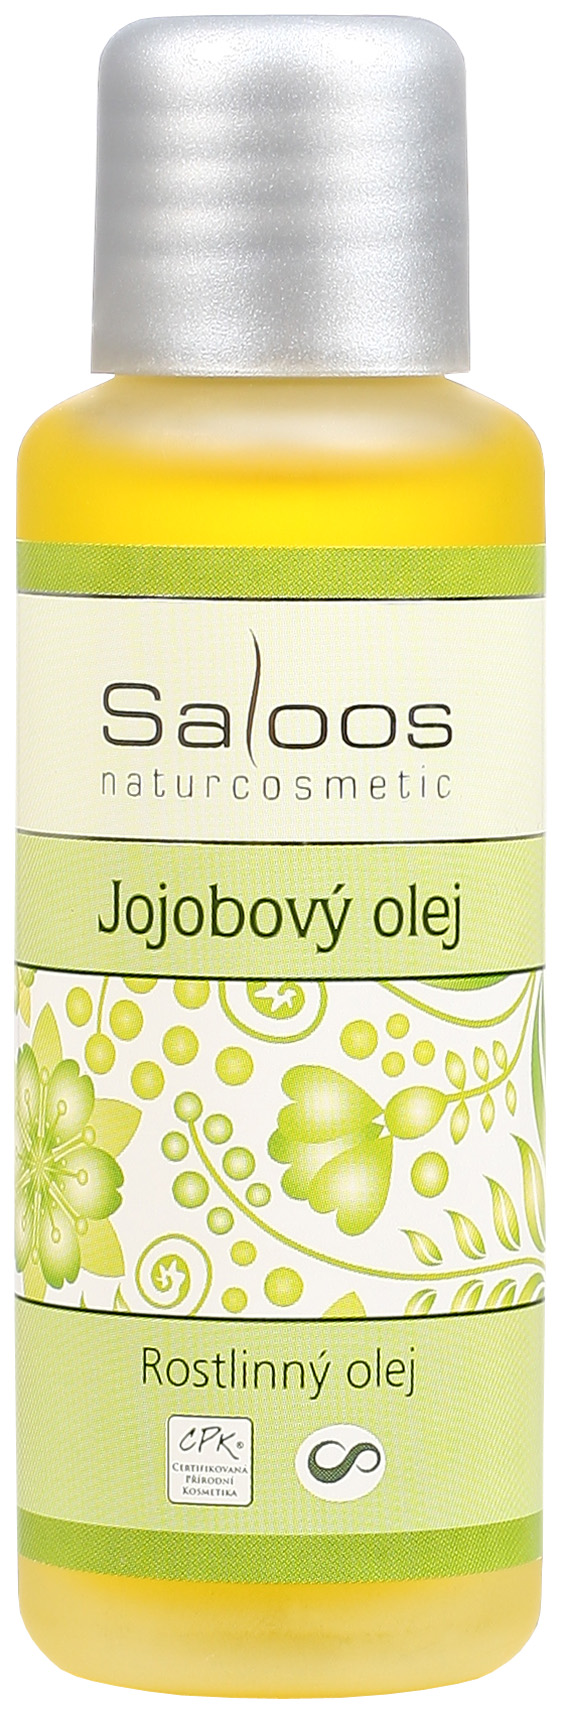 Jojobový olej Saloos Objem: 50 ml